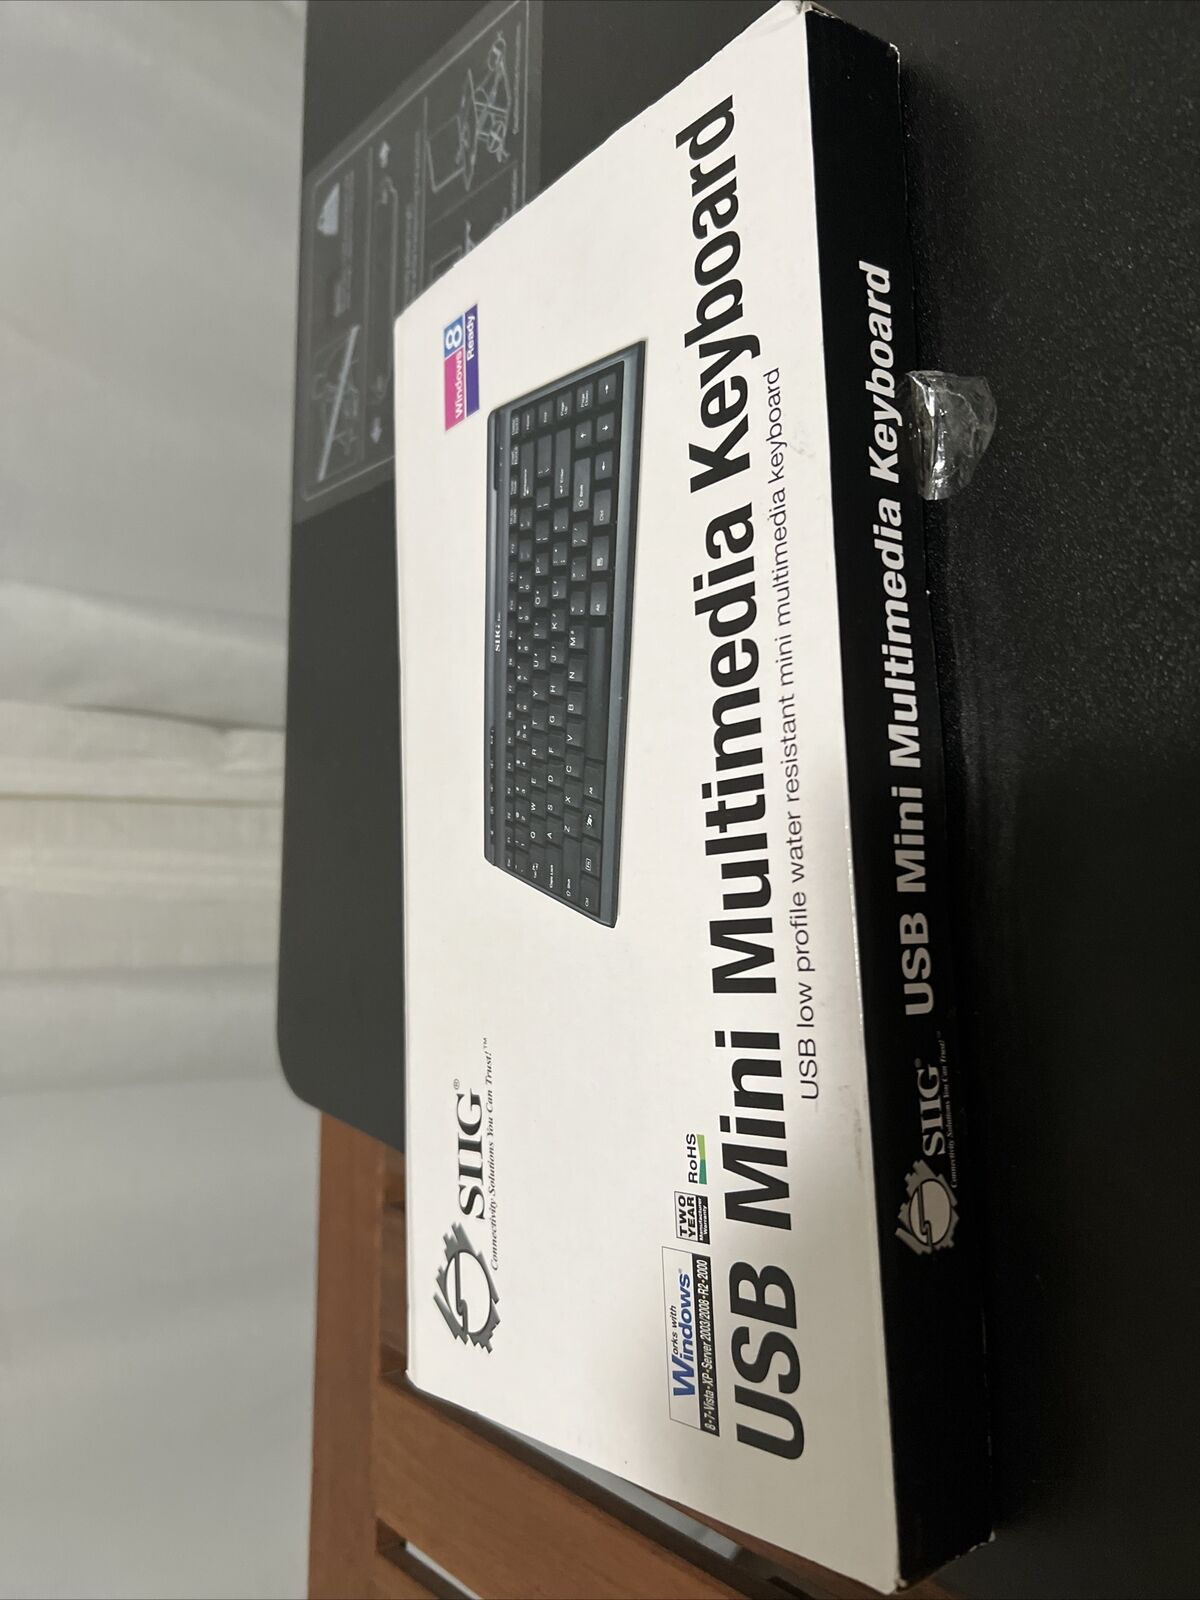 New SIIG JK-US0312-S1 USB Mini Multimedia Keyboard